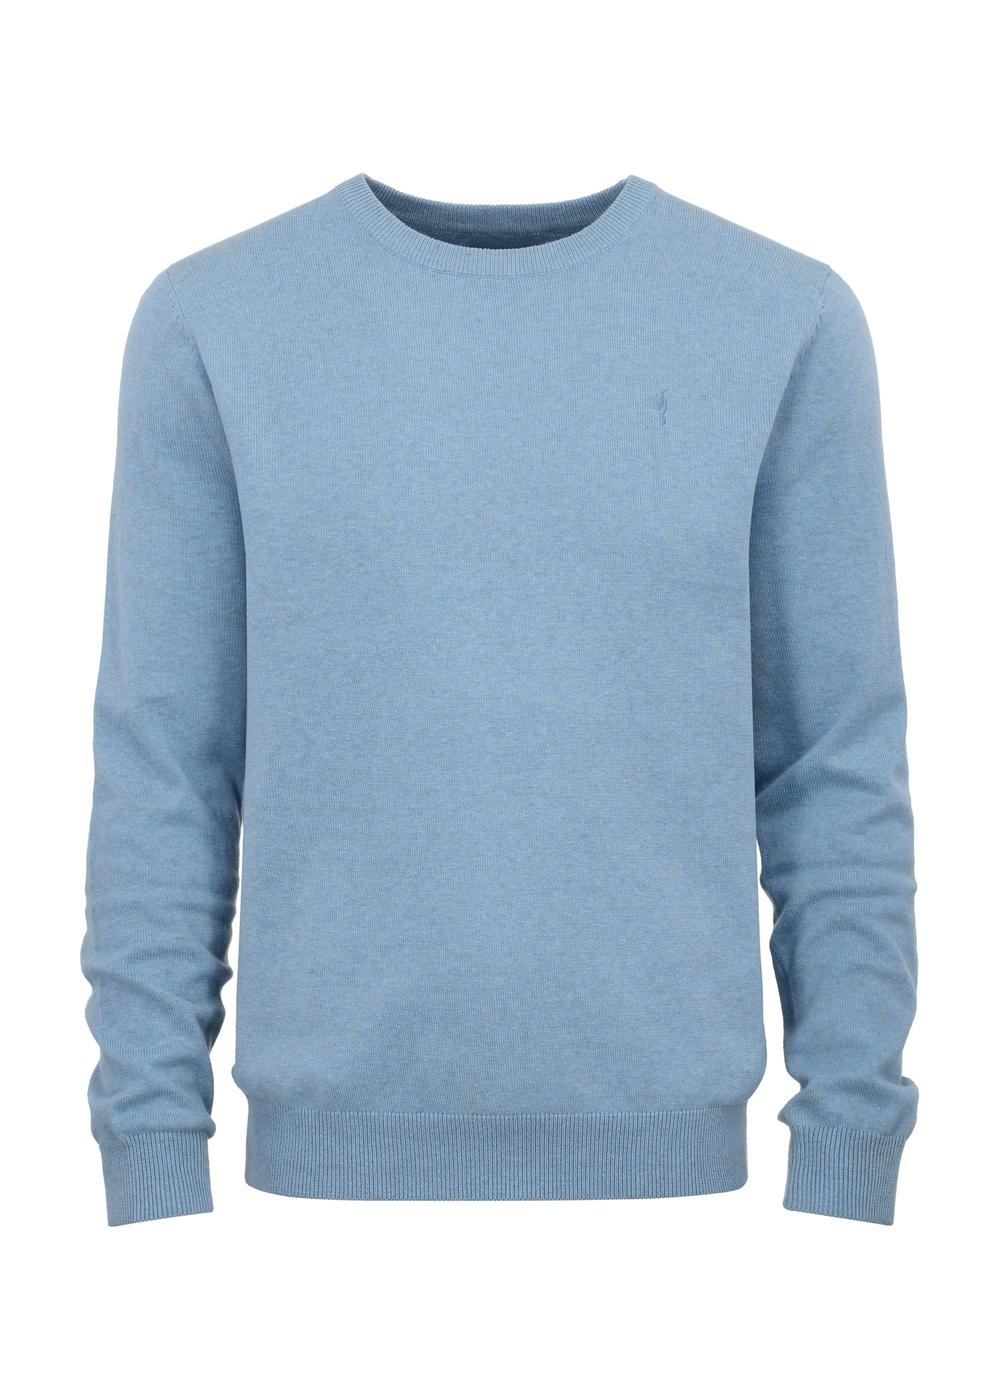 Jasnoniebieski sweter męski z logo SWEMT-0114-60(Z23)